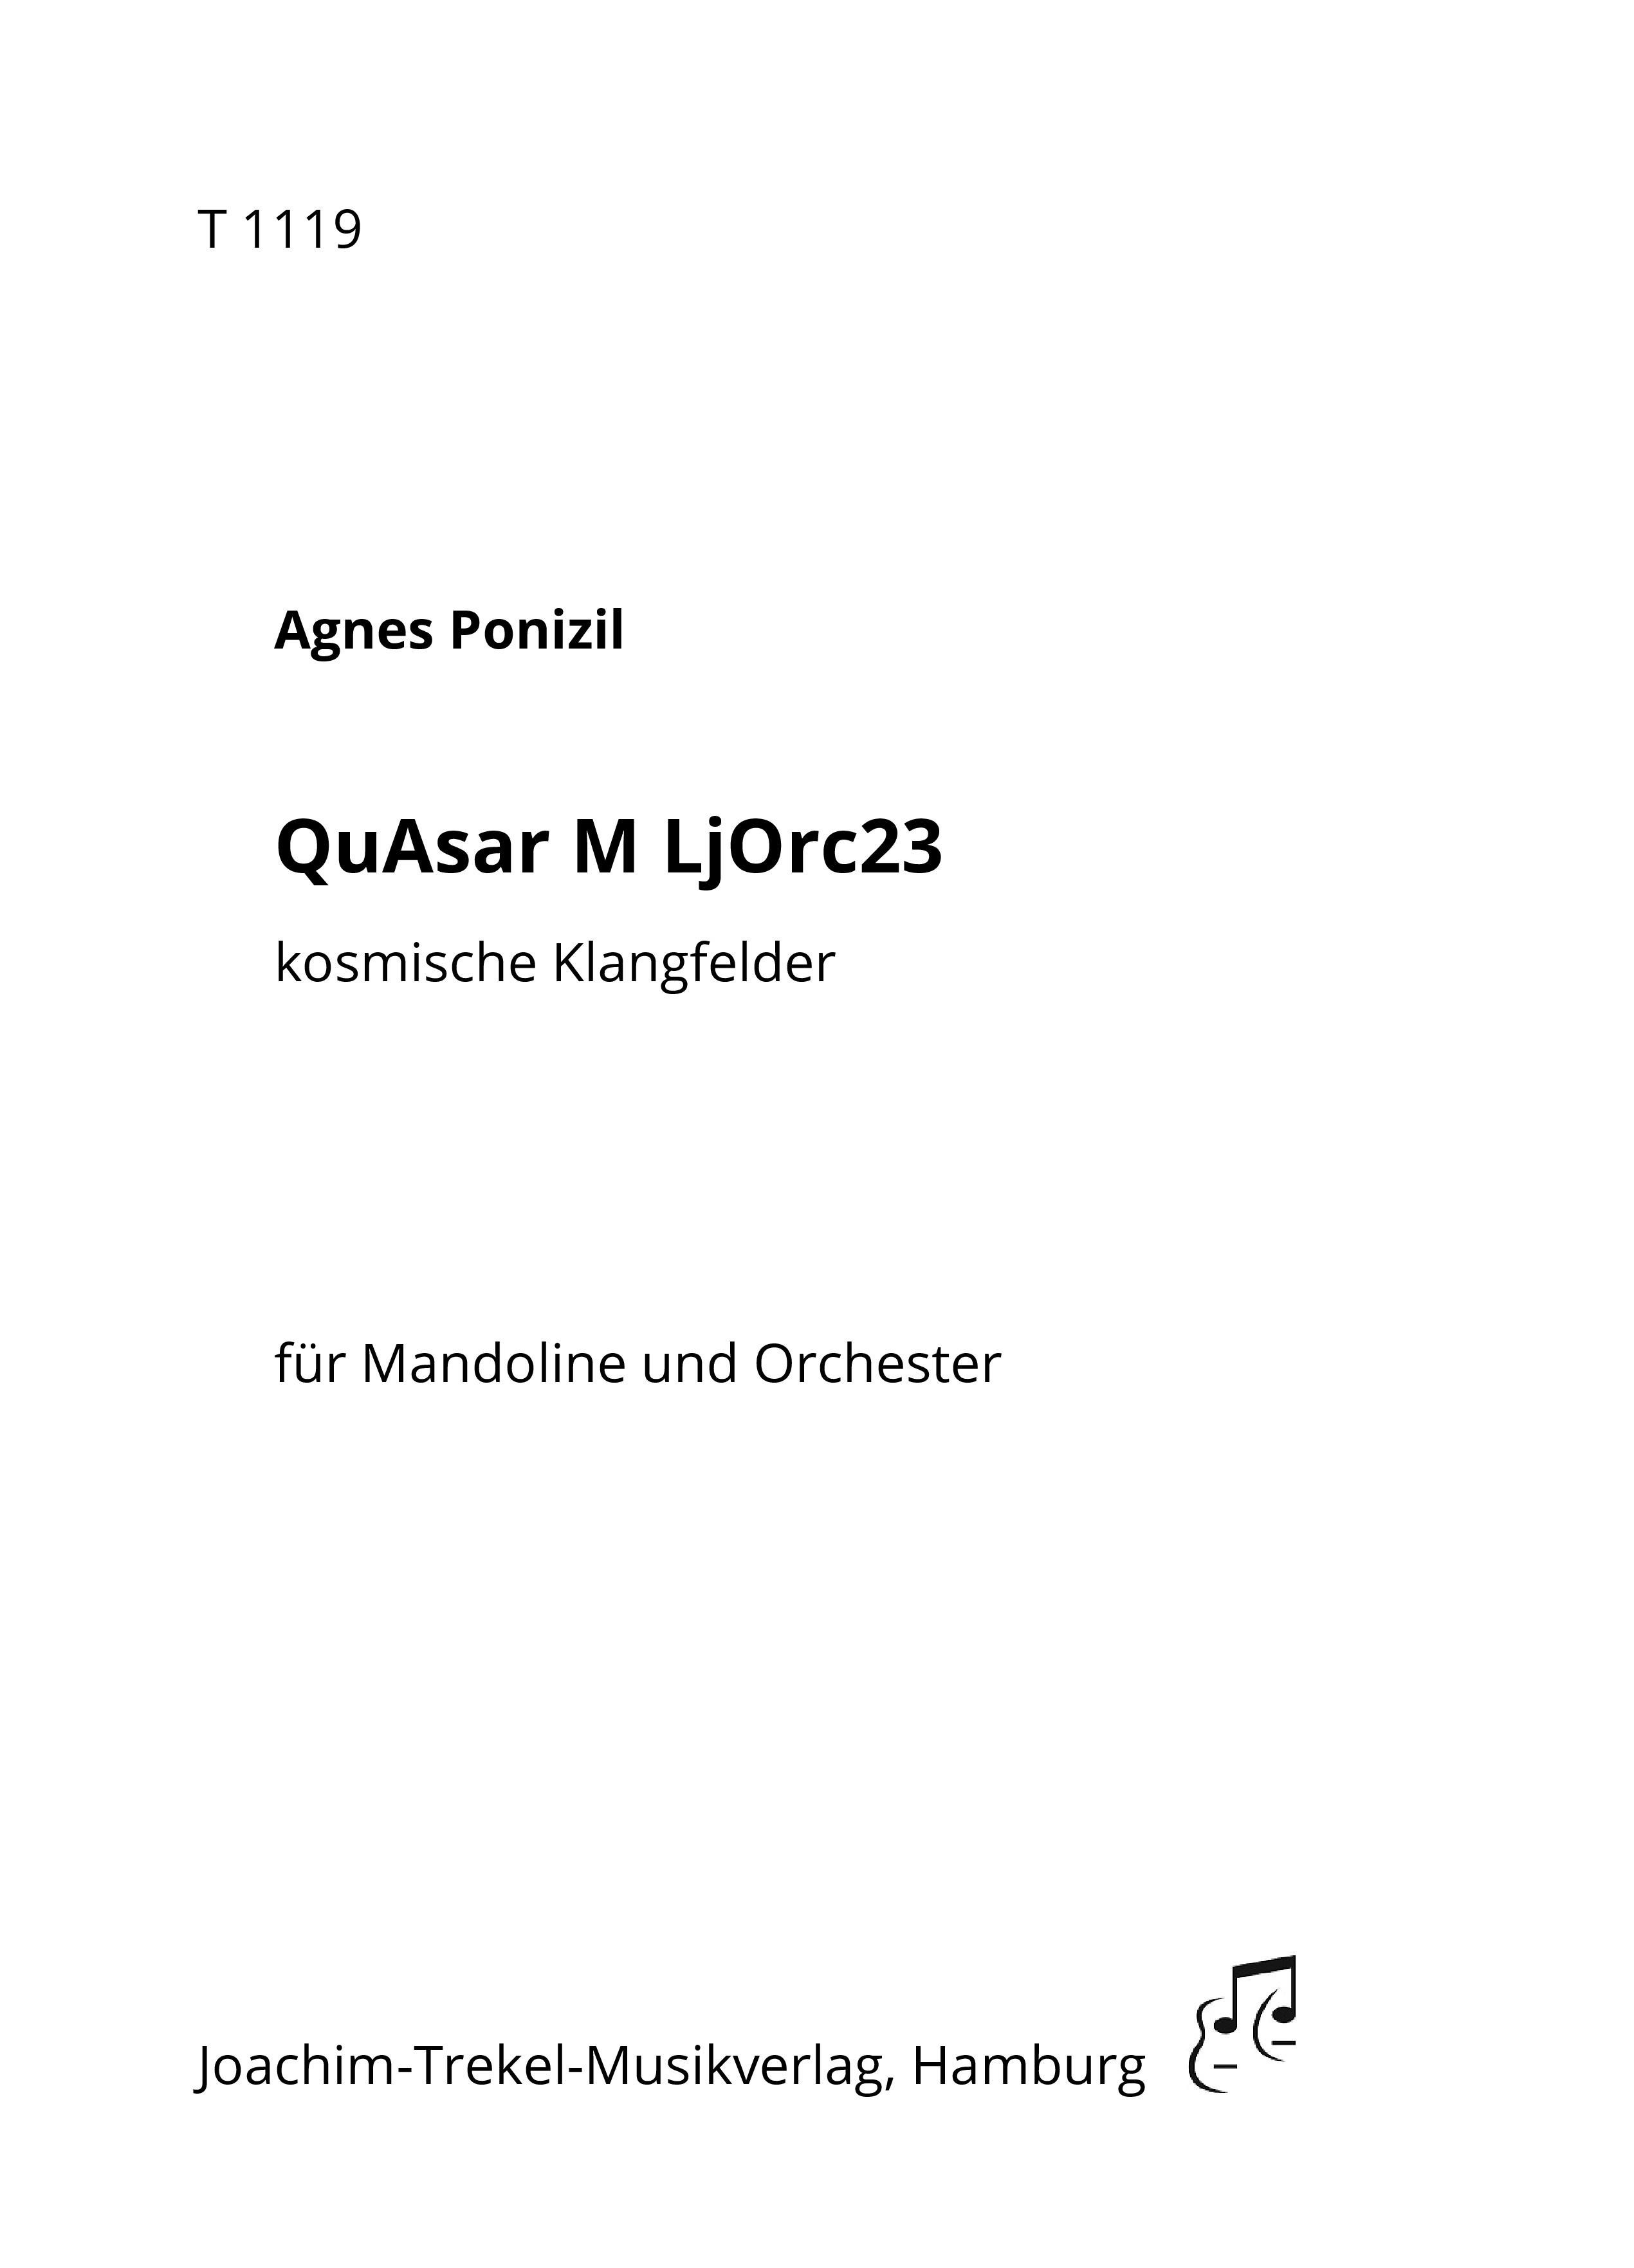 QuAsar M LjOrc23